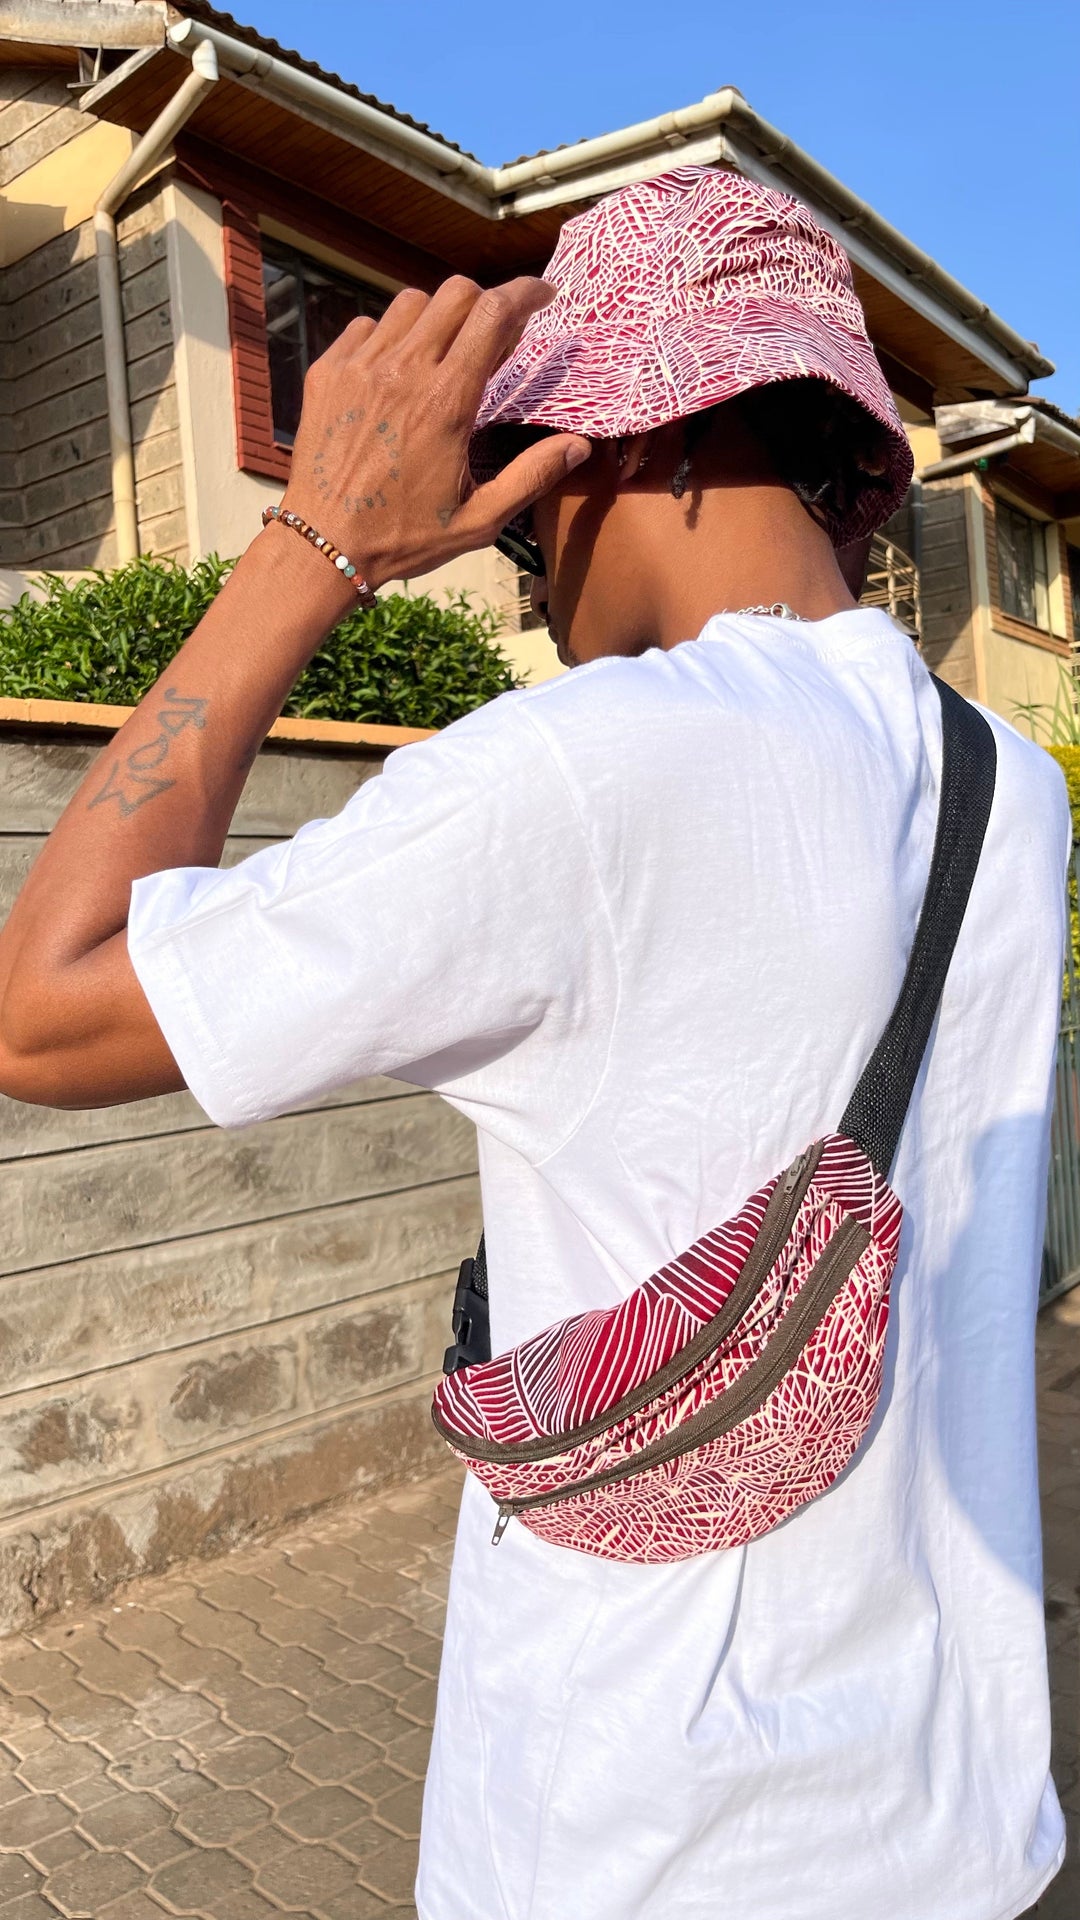 Fannypack ‚Splash Splash‘ colorful Fanny pack Belt bag Hip bag with an adjustable waist strap designed in Kenya